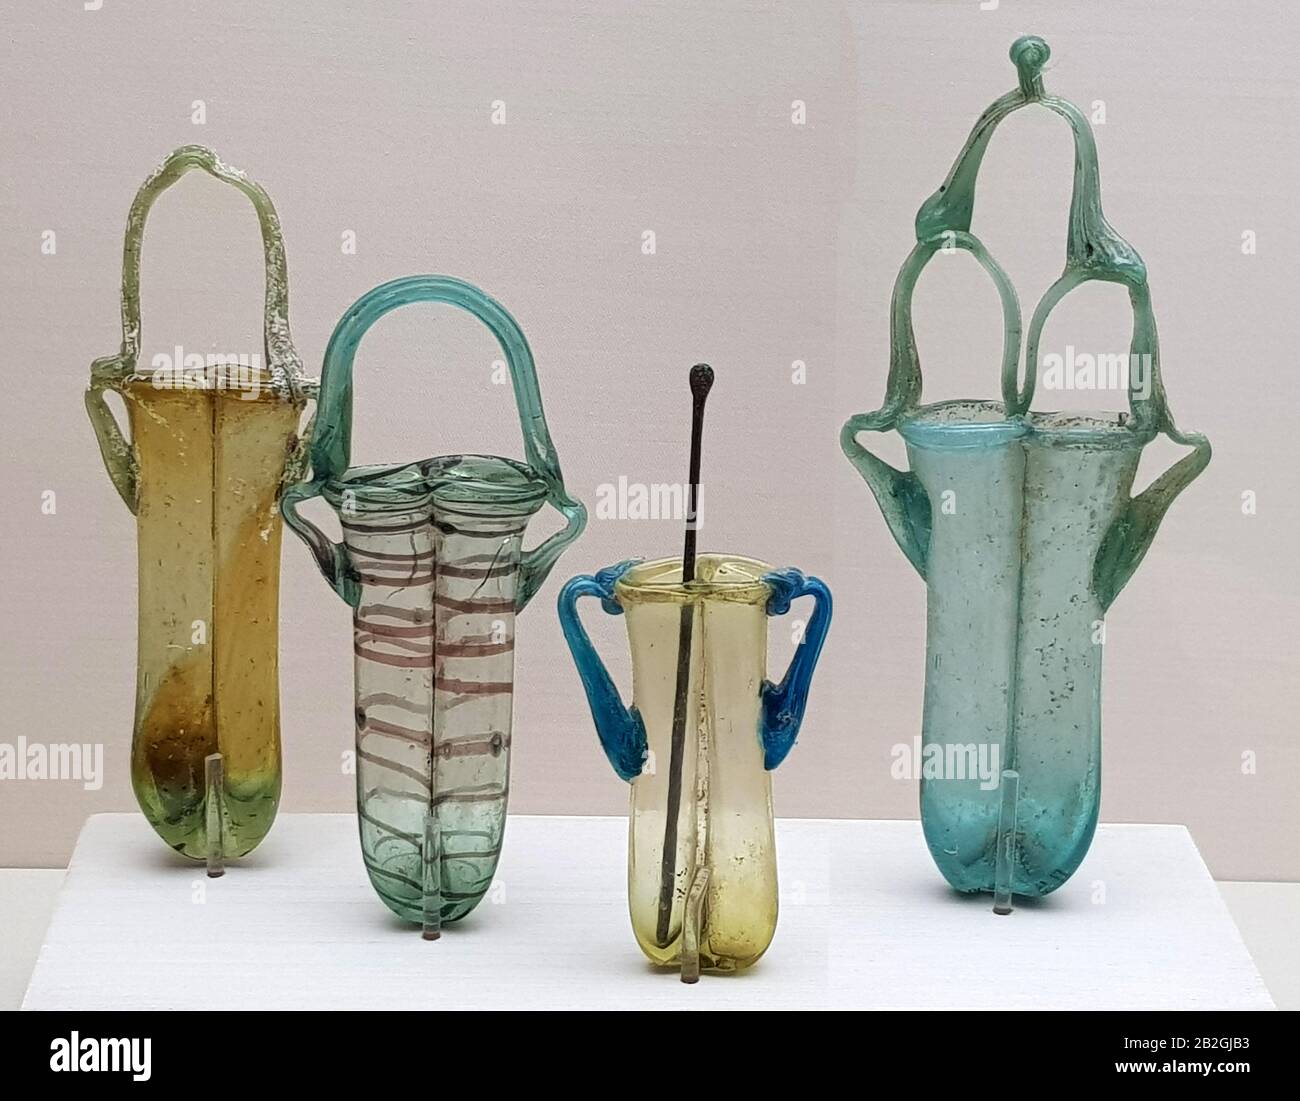 6621. Kohl (pittura ad occhio) vasi di vetro popolare tra i Romani e all'inizio del periodo bizantino. Foto Stock